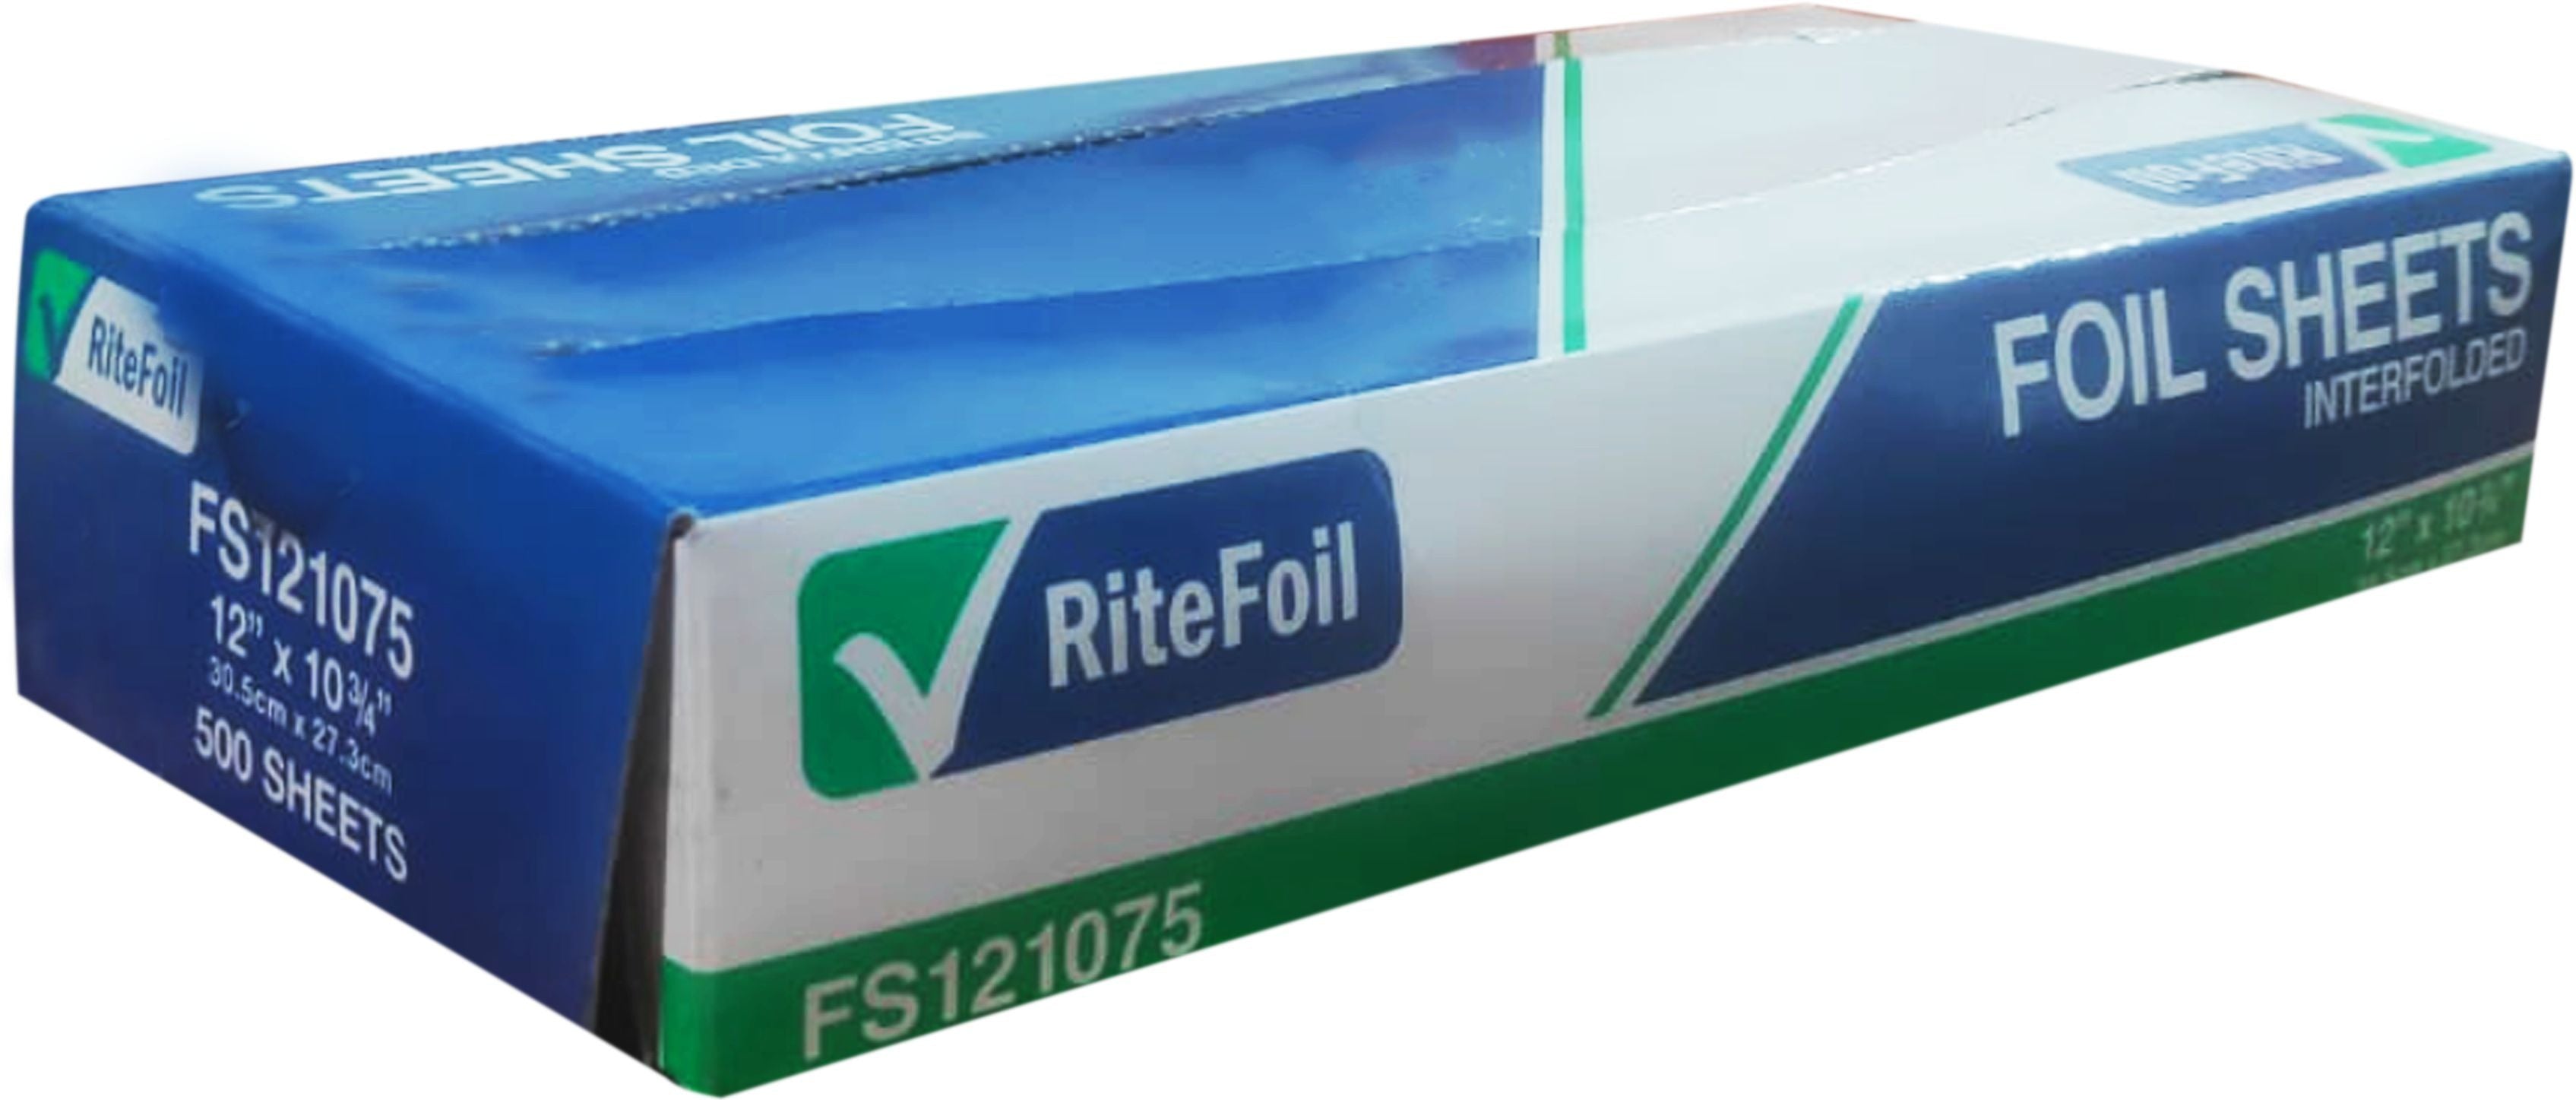 RiteFoil - 12" x 10.75" Foil Pop Up Sheets, 500sh/bx - FS121075